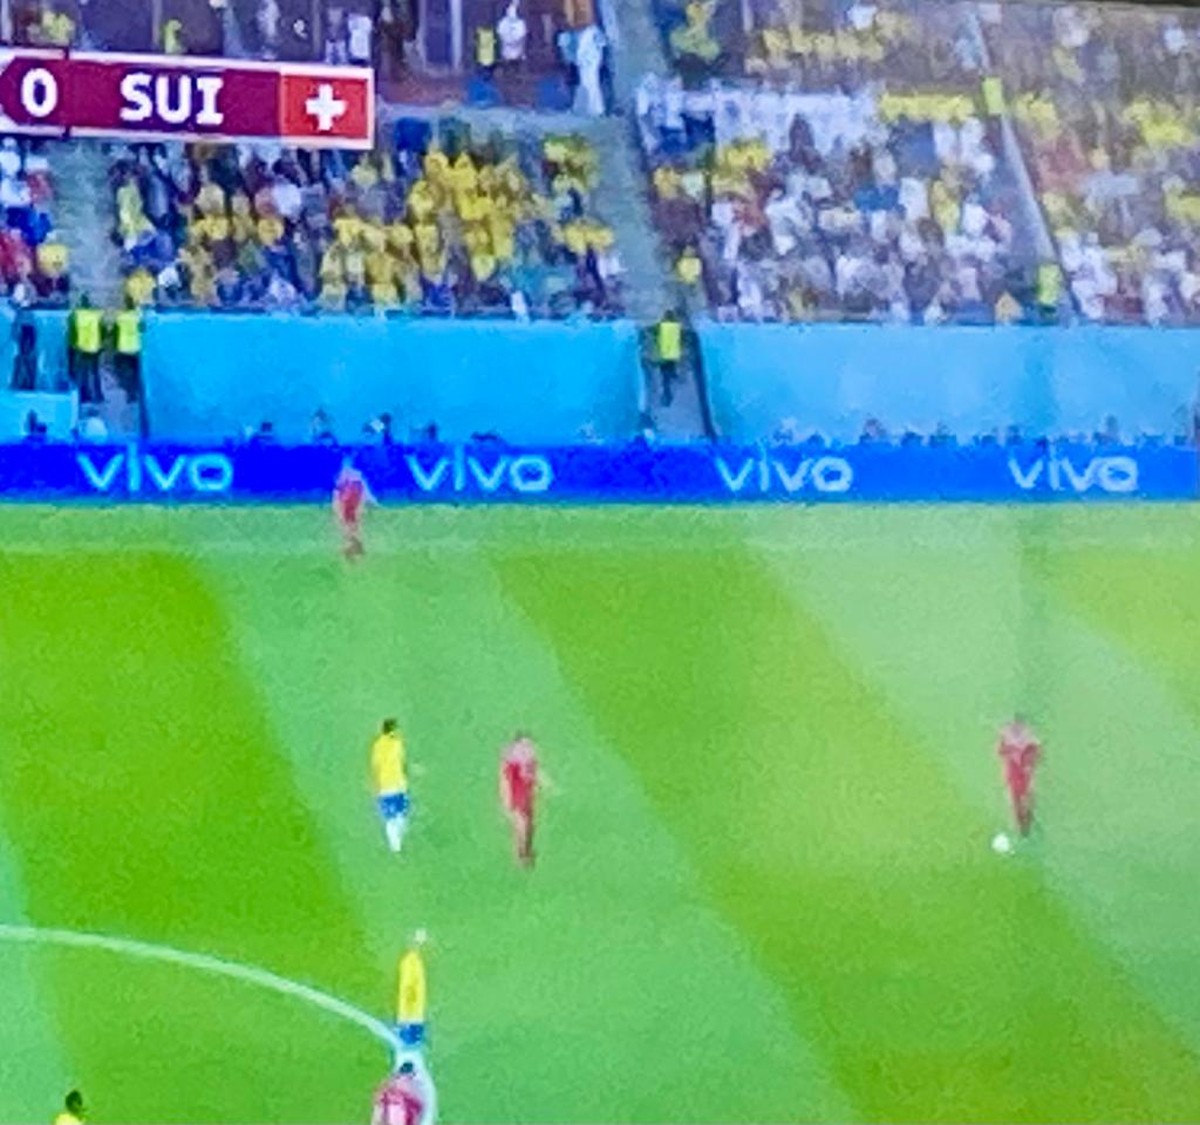 Vivo não está na Copa do Mundo no Catar, mas ganha publicidade de graça